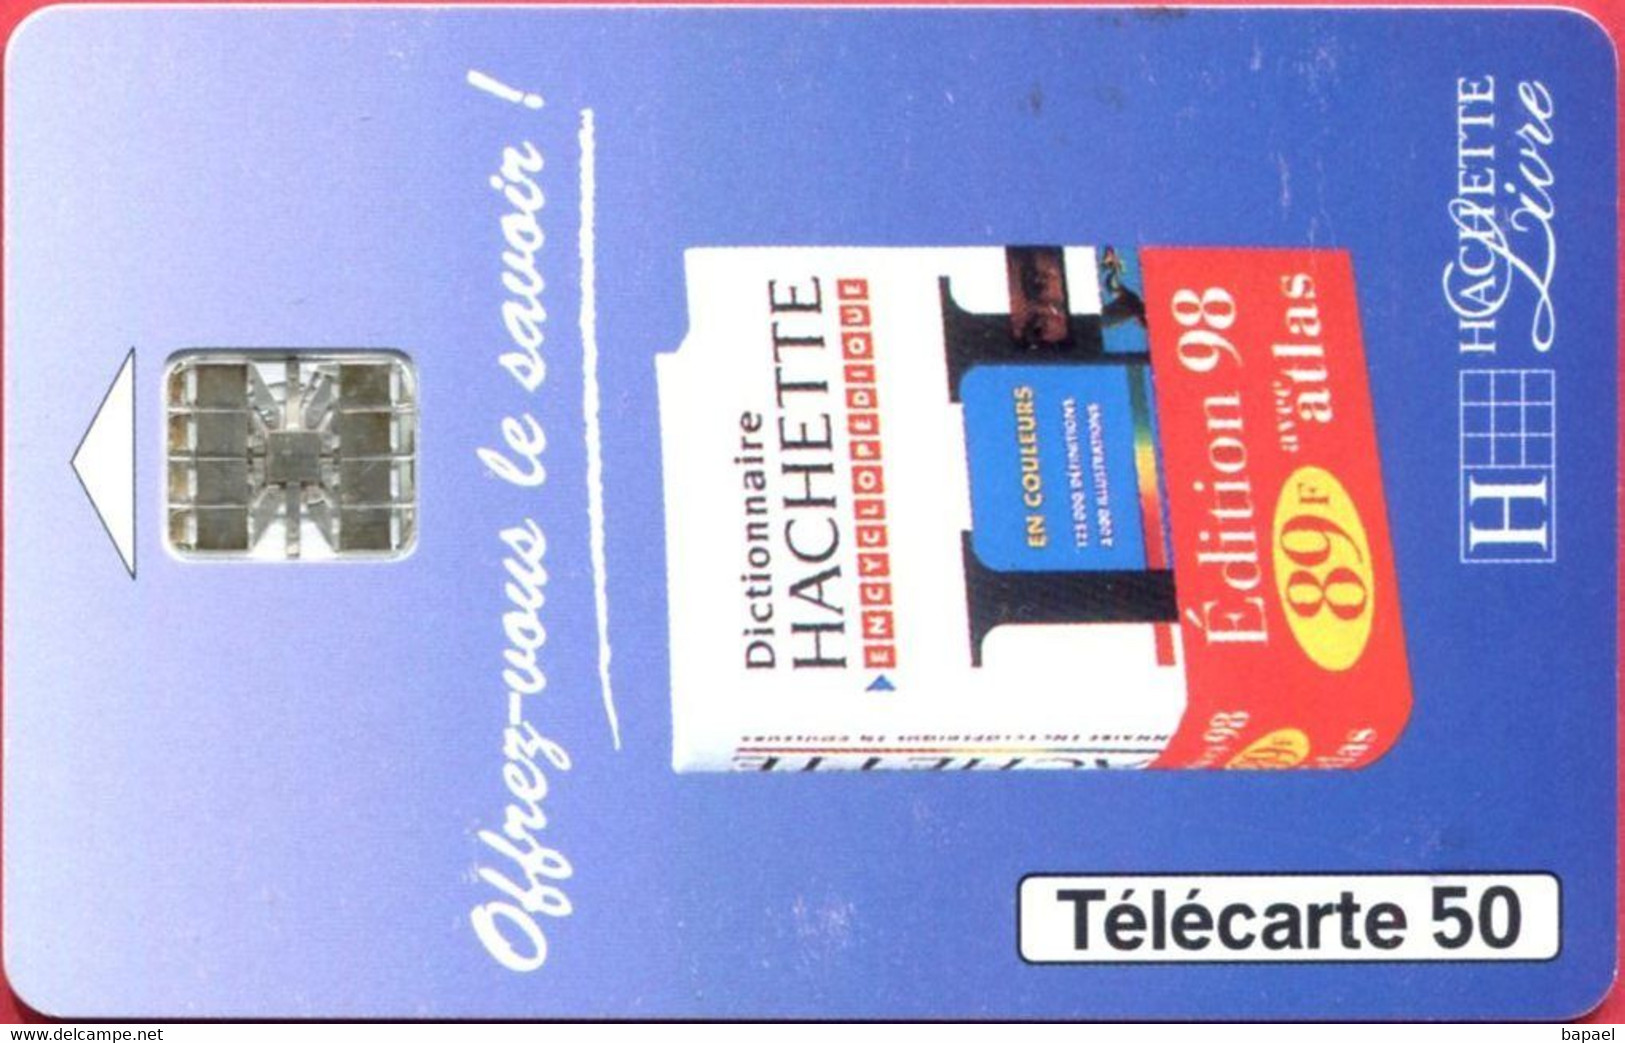 Télécarte Réf Pho 0774 (1997) - Thème Livres - Dictionnaire Hachette 98 (Recto-Verso) - Cultural